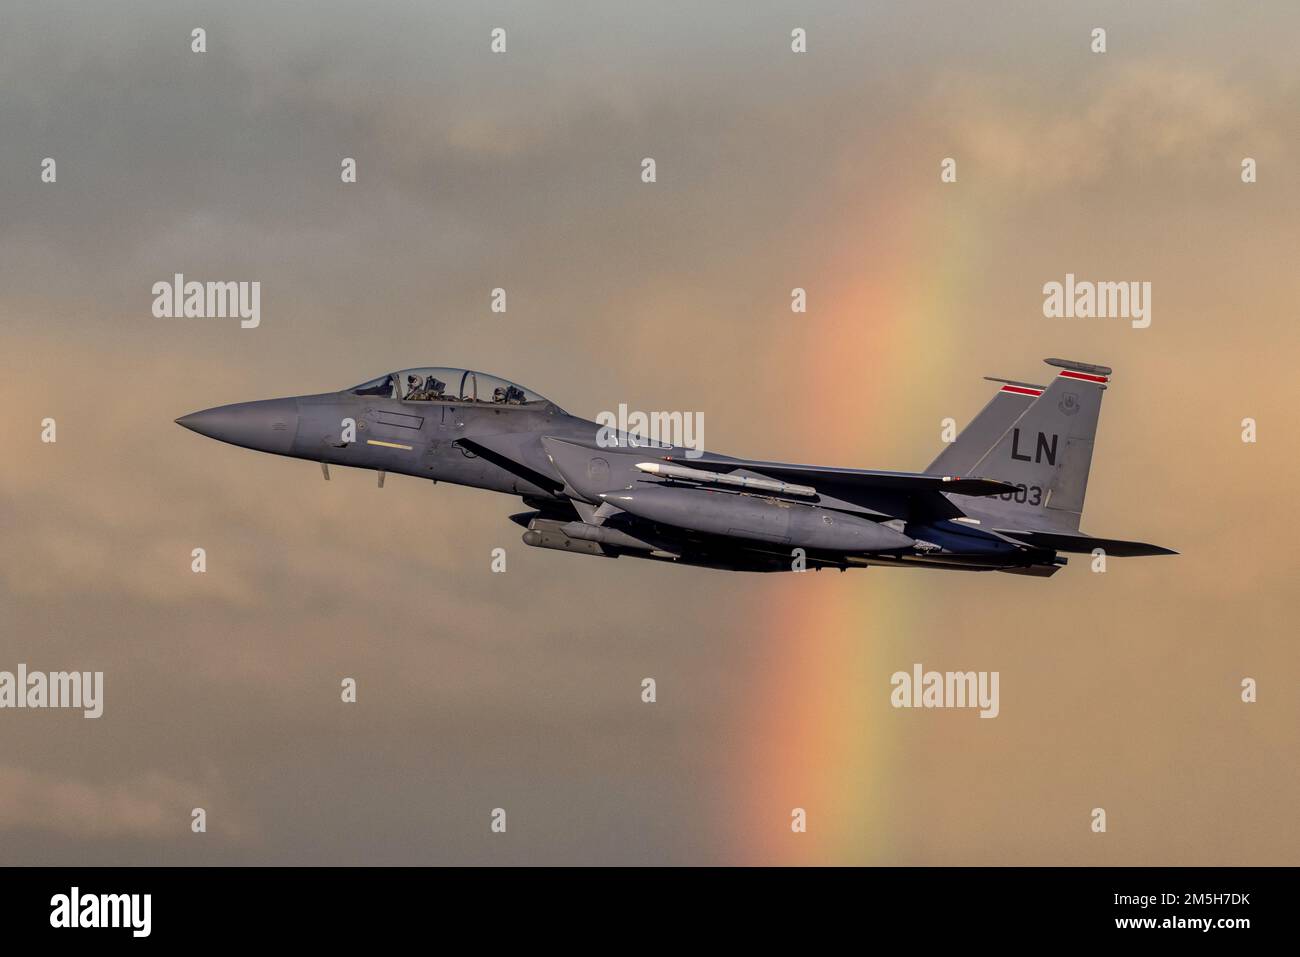 F-15 Kampfflugzeuge fliegen mit Raketen auf dem Weg zur Mission. Moderne Kampfjets und Airforce-Piloten im Einsatz für die Luftverteidigung. Stockfoto